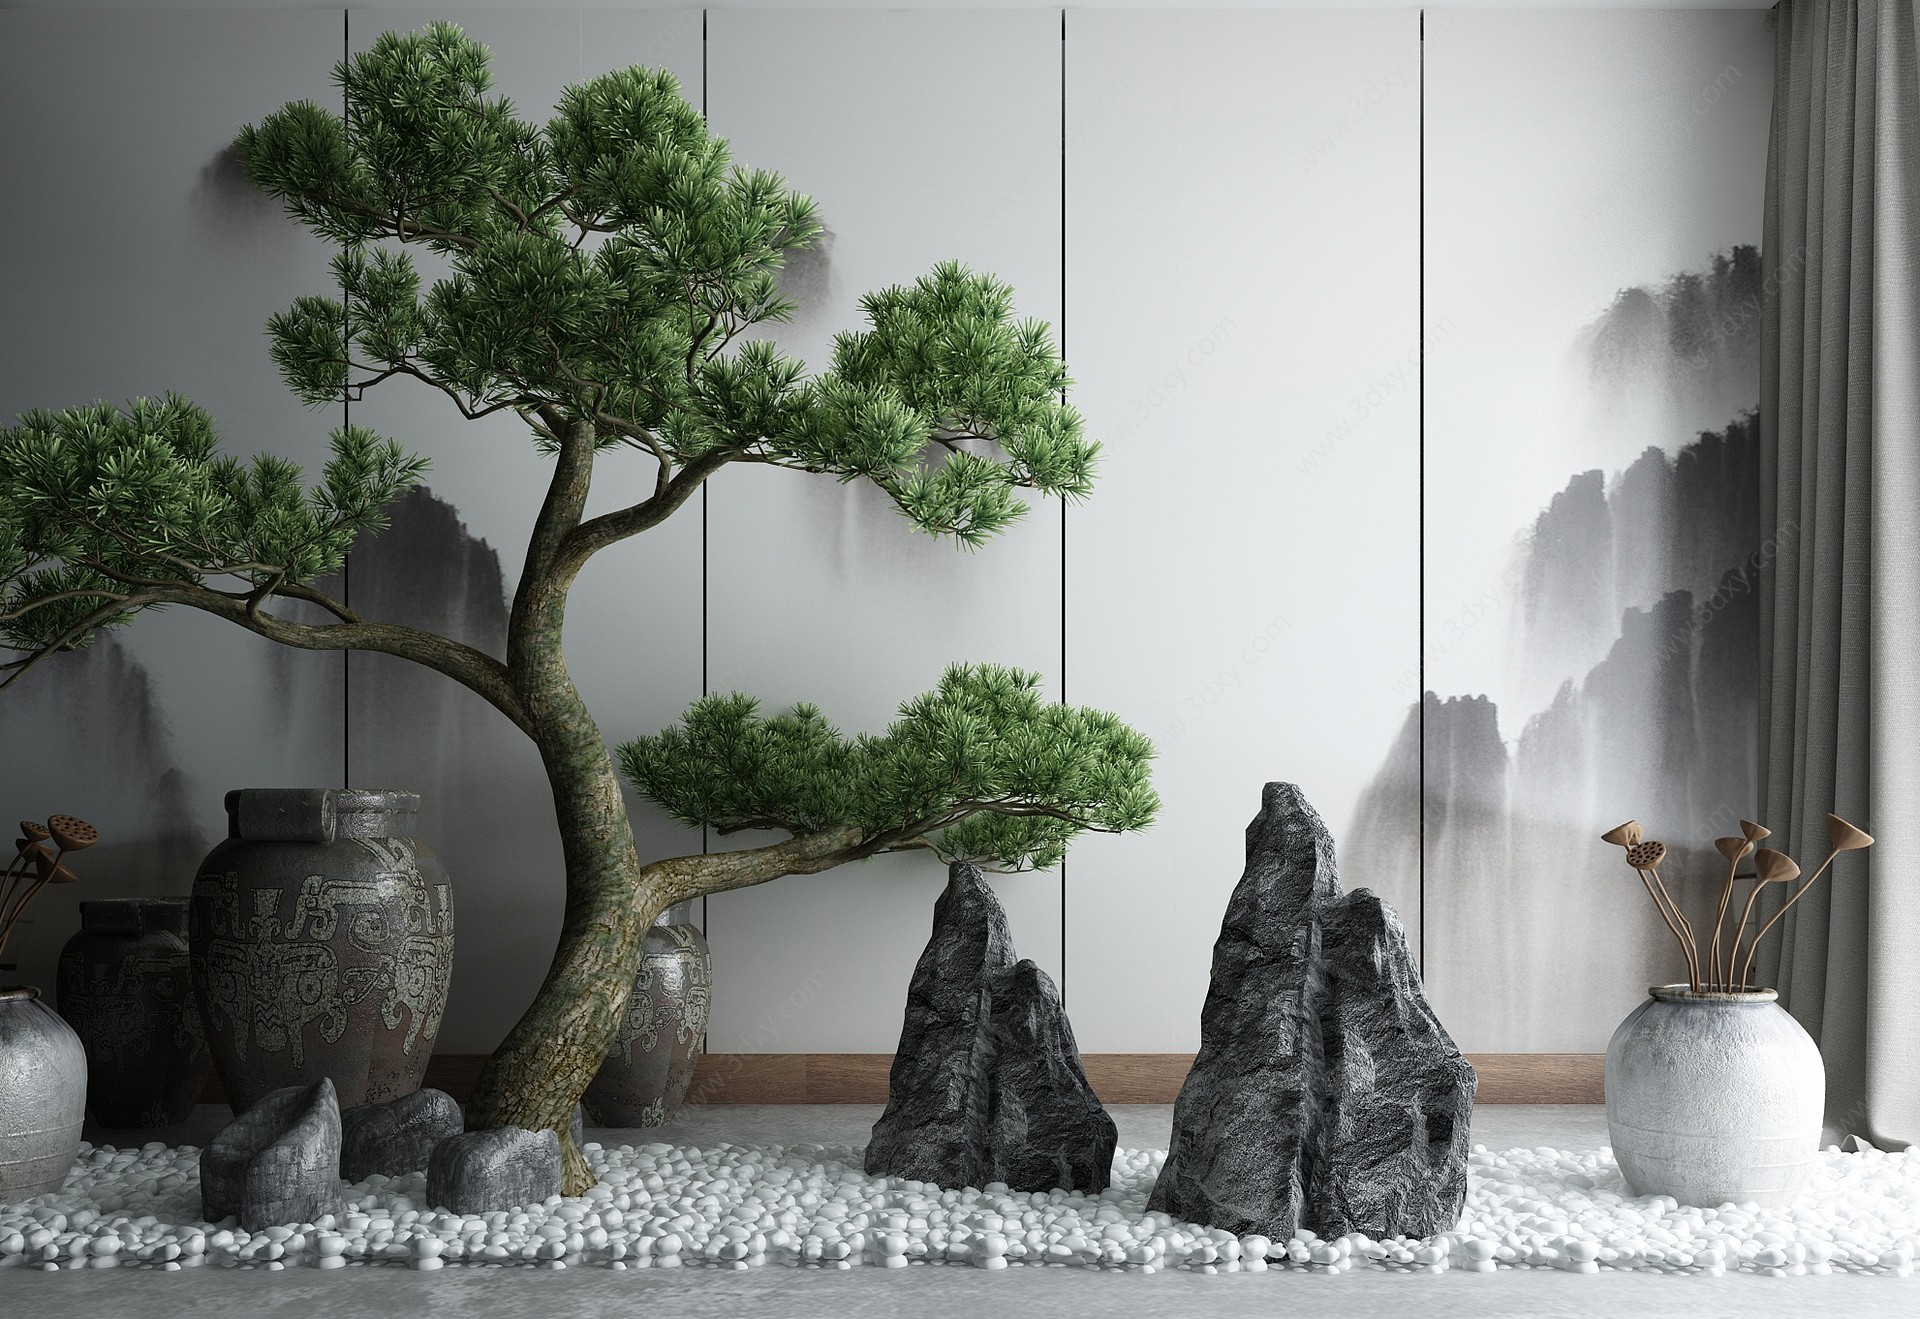 中式庭院景观小品3D模型